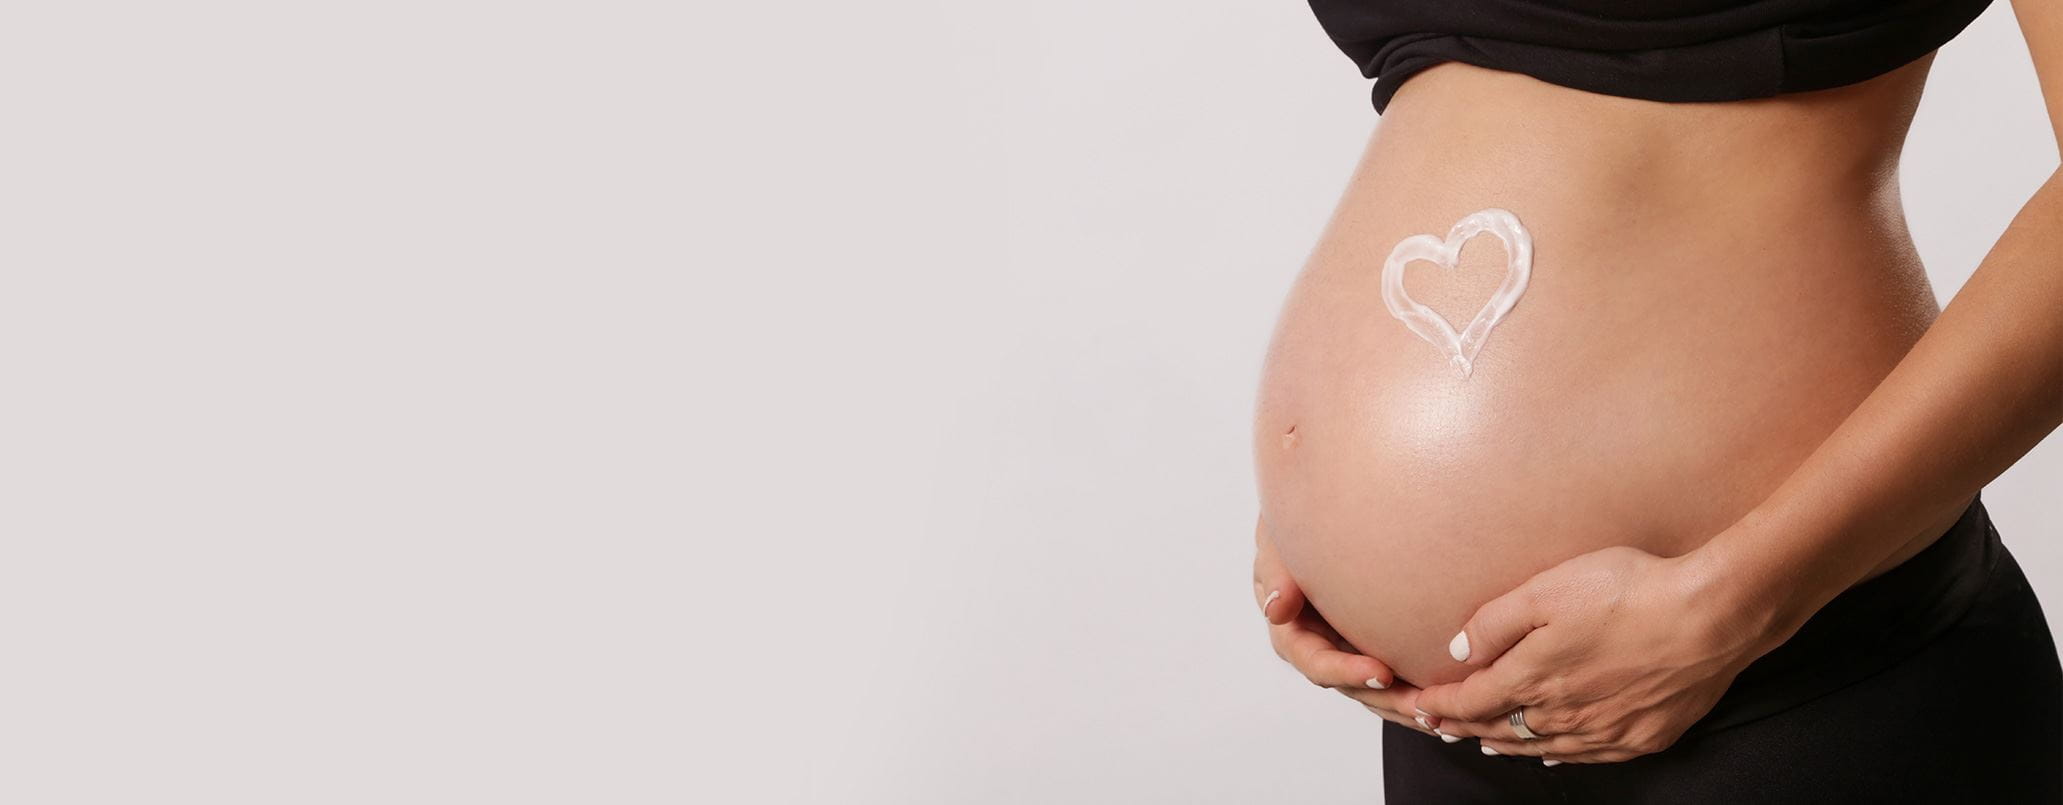  brufoli in gravidanza: perché vengono e come eliminarli